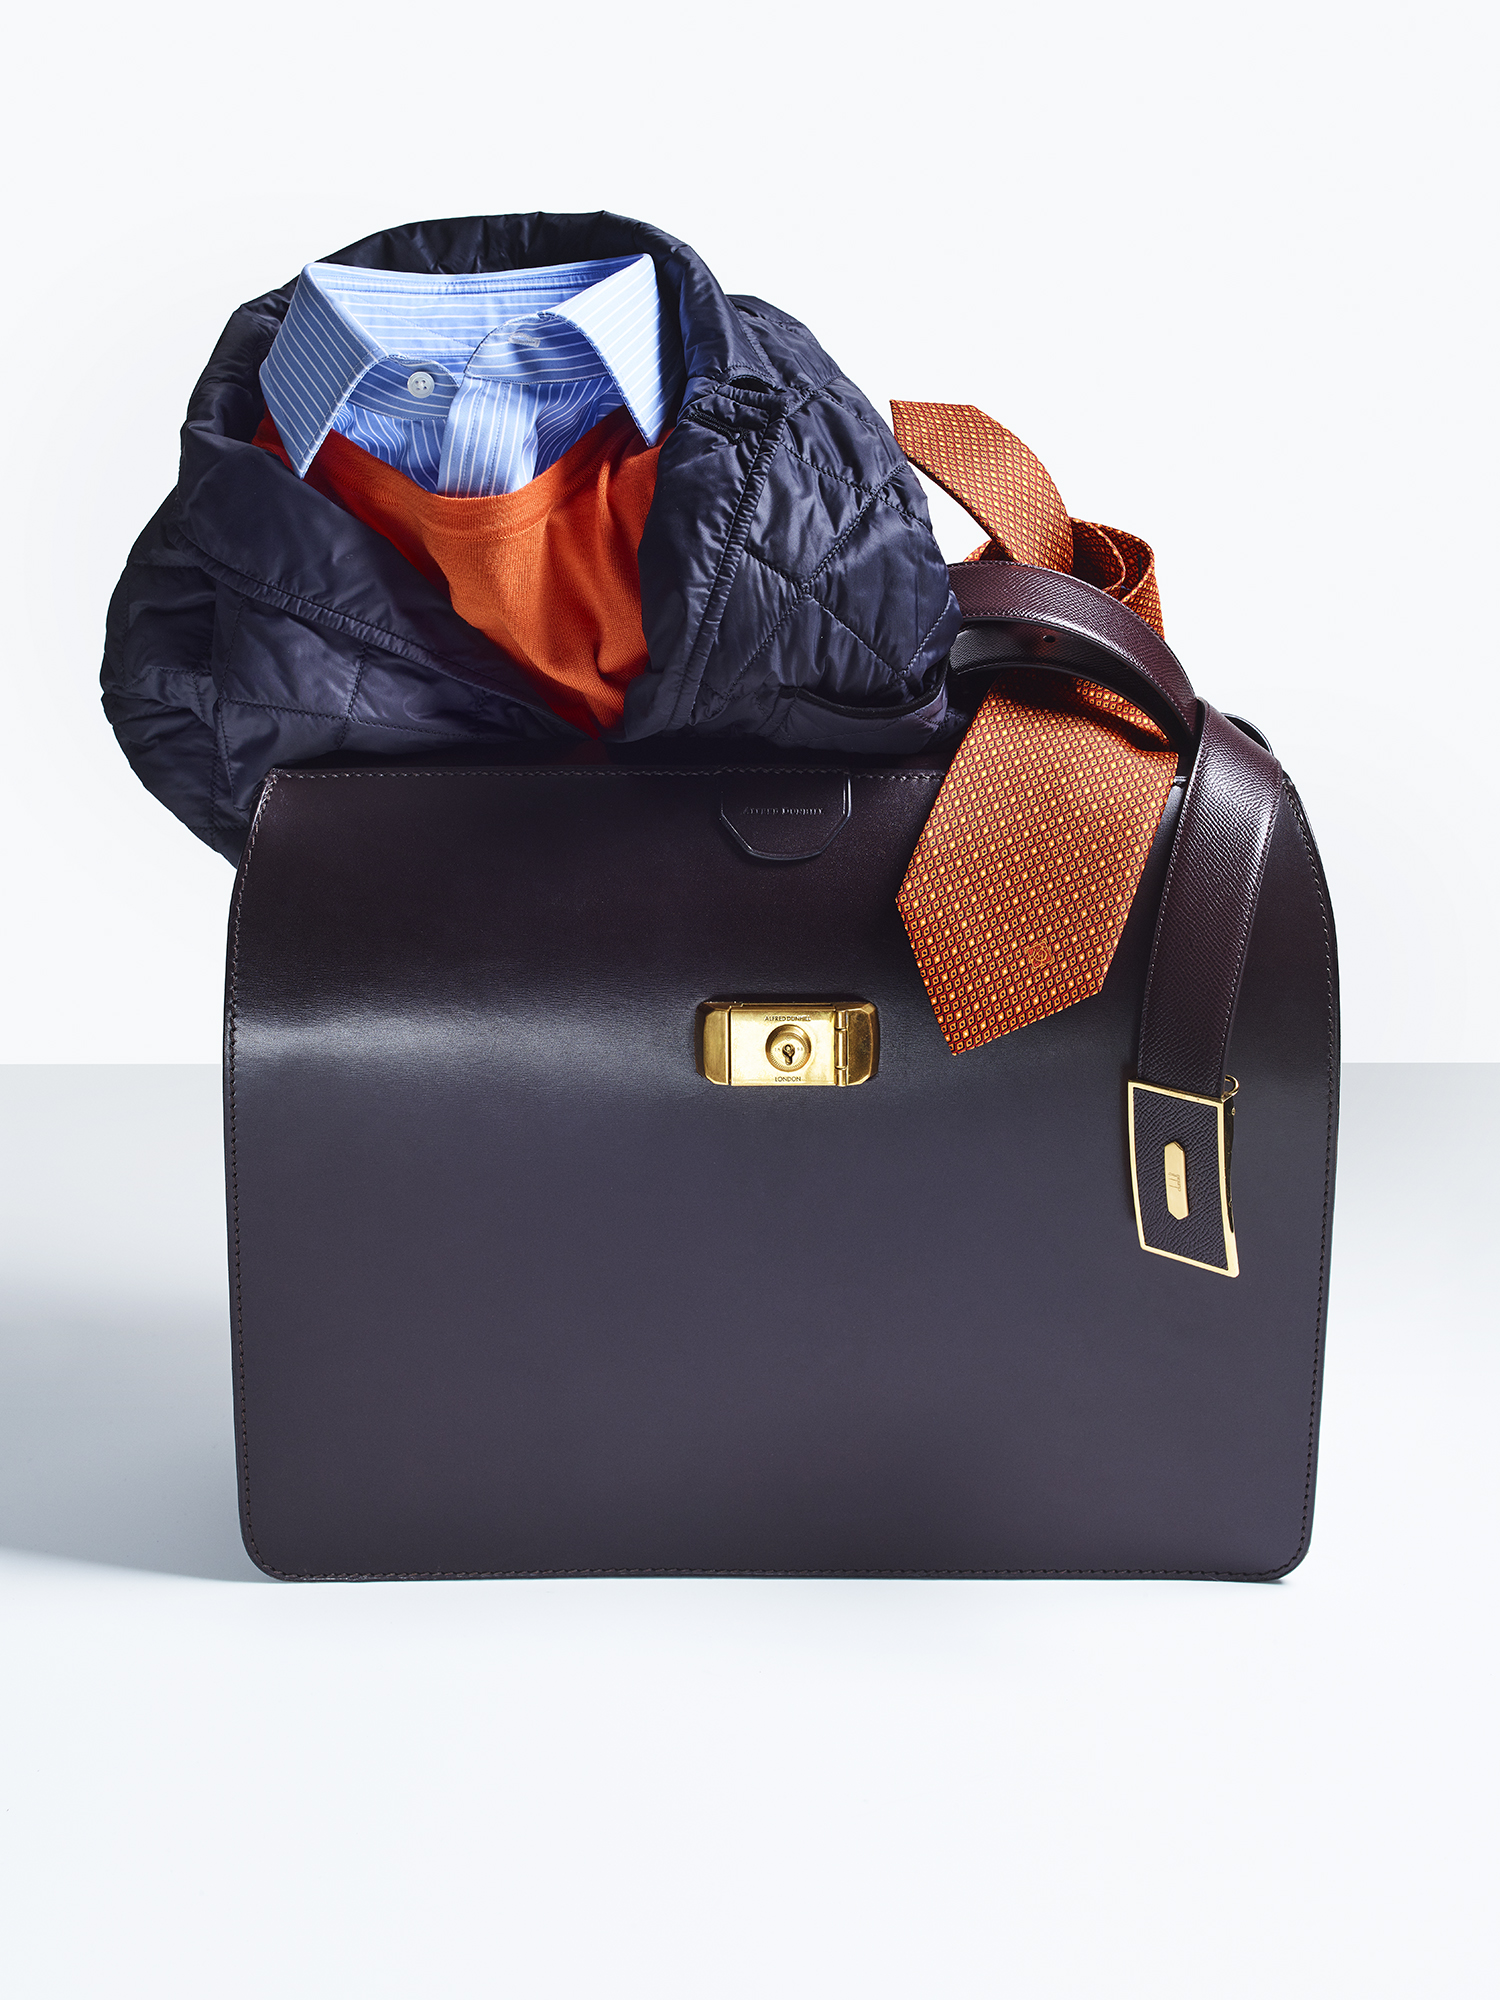 Wolsley bag, £3,395; quilted blazer, £695; crew neck, £275; stripe shirt, £195; leather belt, £230; tie, £125